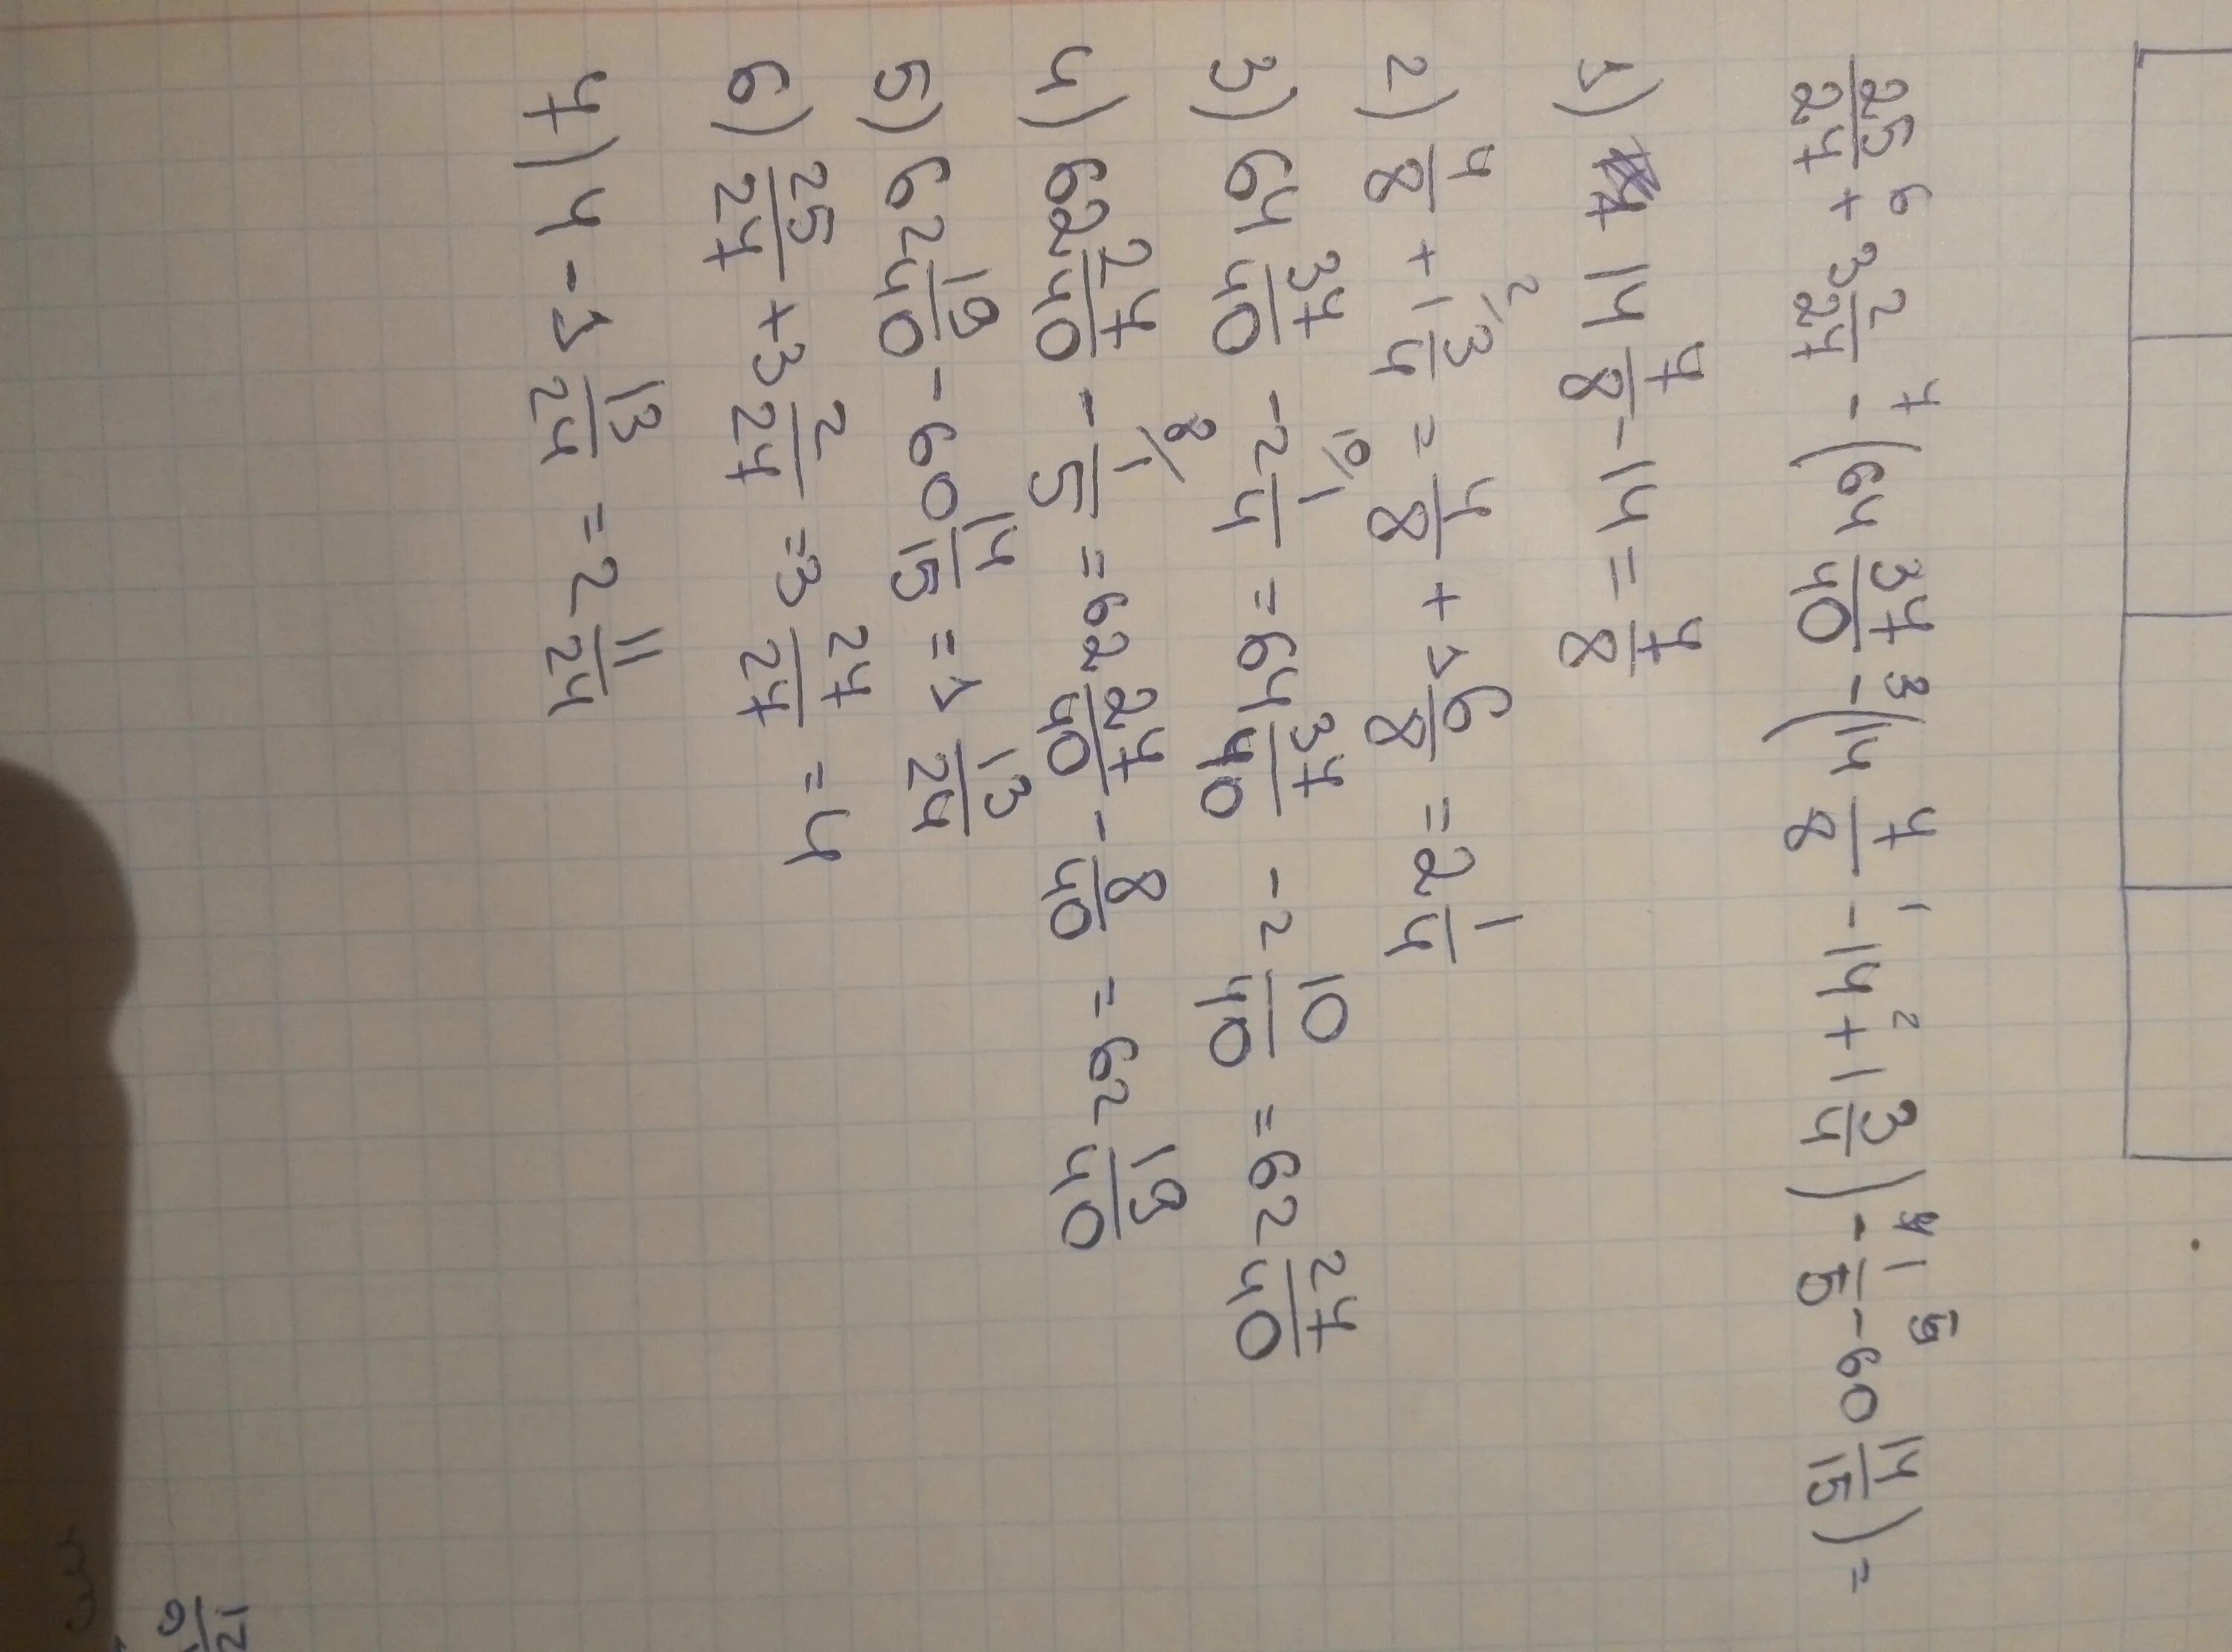 (3/14 - 2/7 + 1/2) * 14. 25 Выполните действия. Выполните действия 3.75+2 1/2. 2 / 3^( – 14) × (2 / 3^( – 2))^( – 5) = 5,0625. 3 14 умножить на 2 25